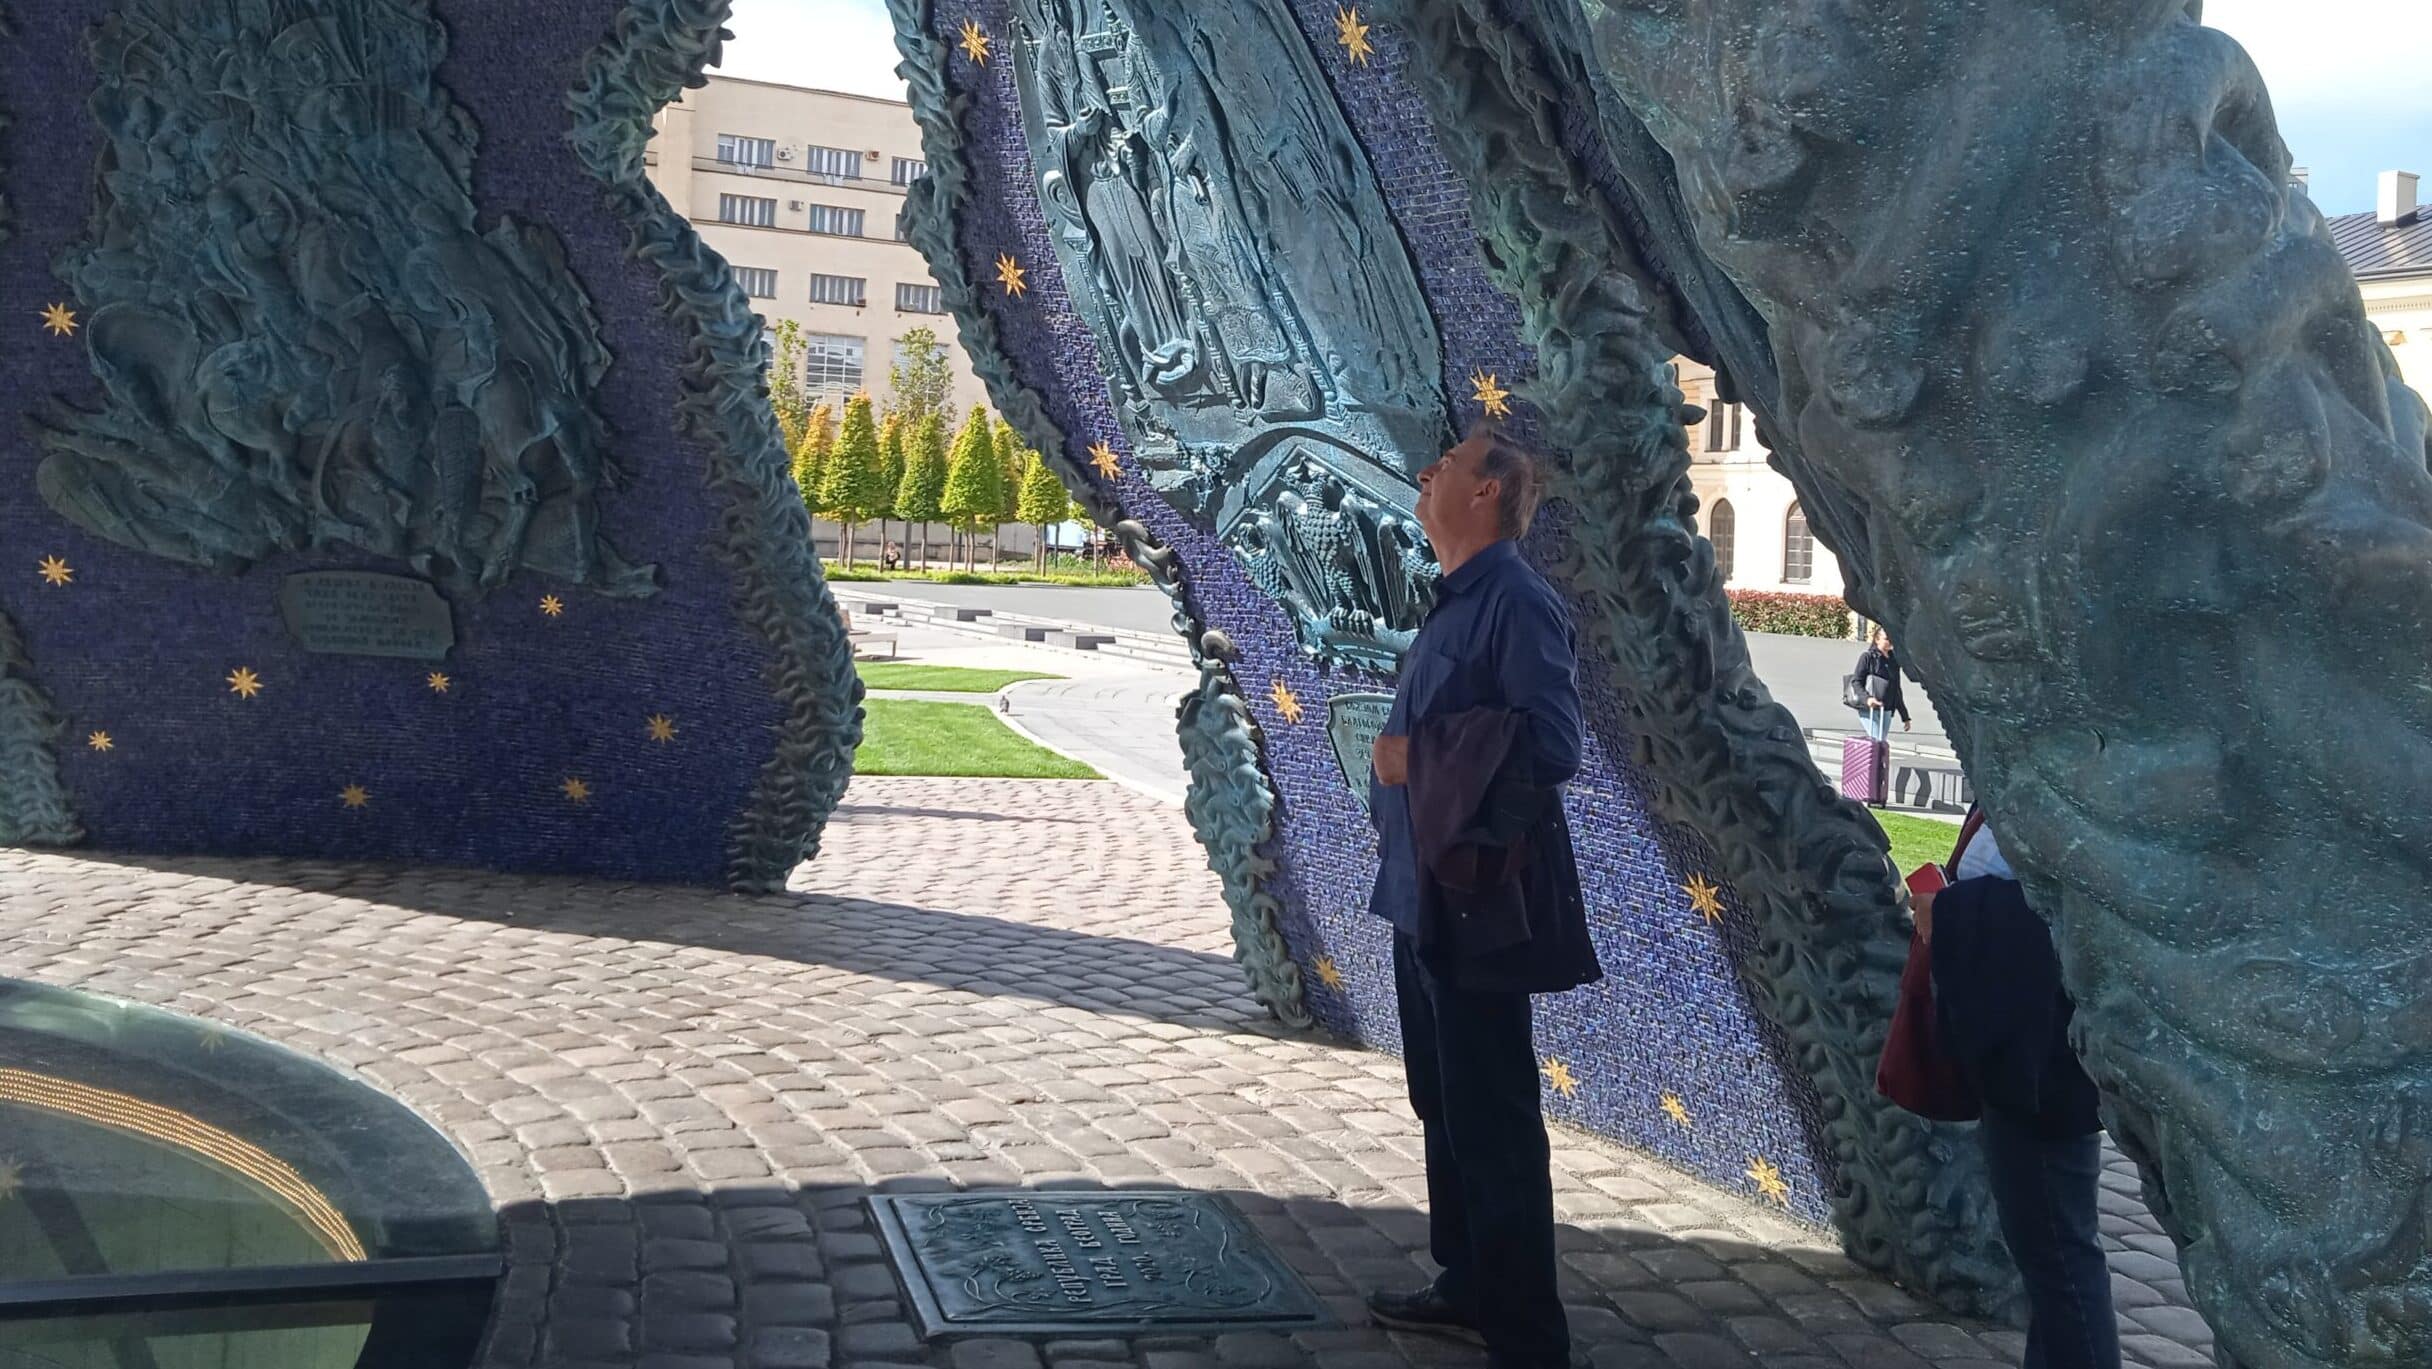 "Ispod šlema mozga nema": Reporterka Danasa na vođenoj turi u okviru spomeničkog kompleksa Stefanu Nemanji 2